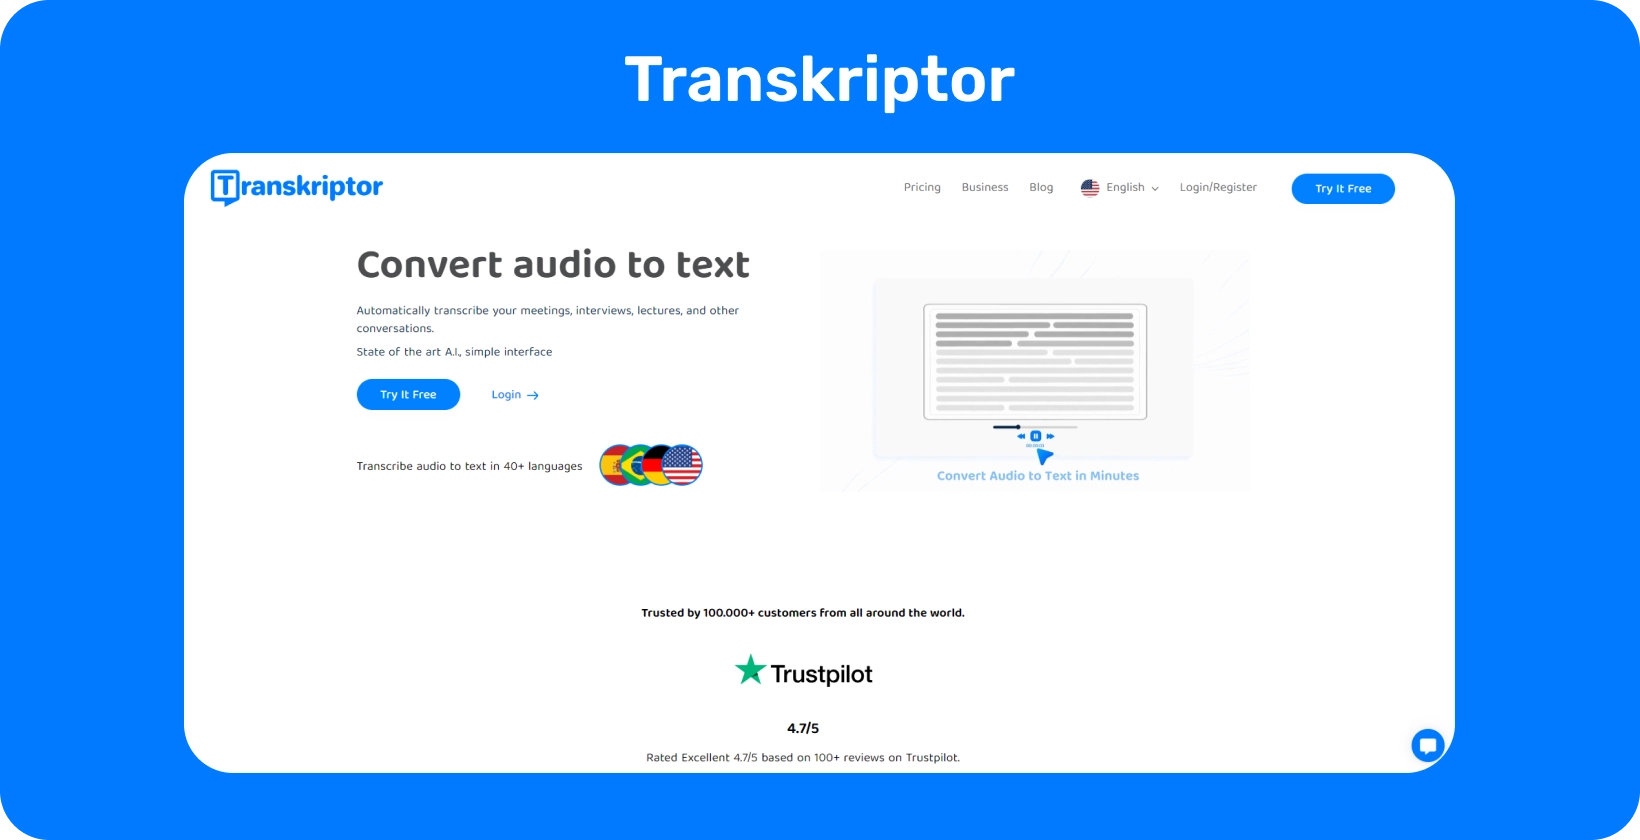 Интерфейс Transkriptor, демонстрирующий функцию помощника для совещаний, оптимизирующий качественную транскрипцию исследований.